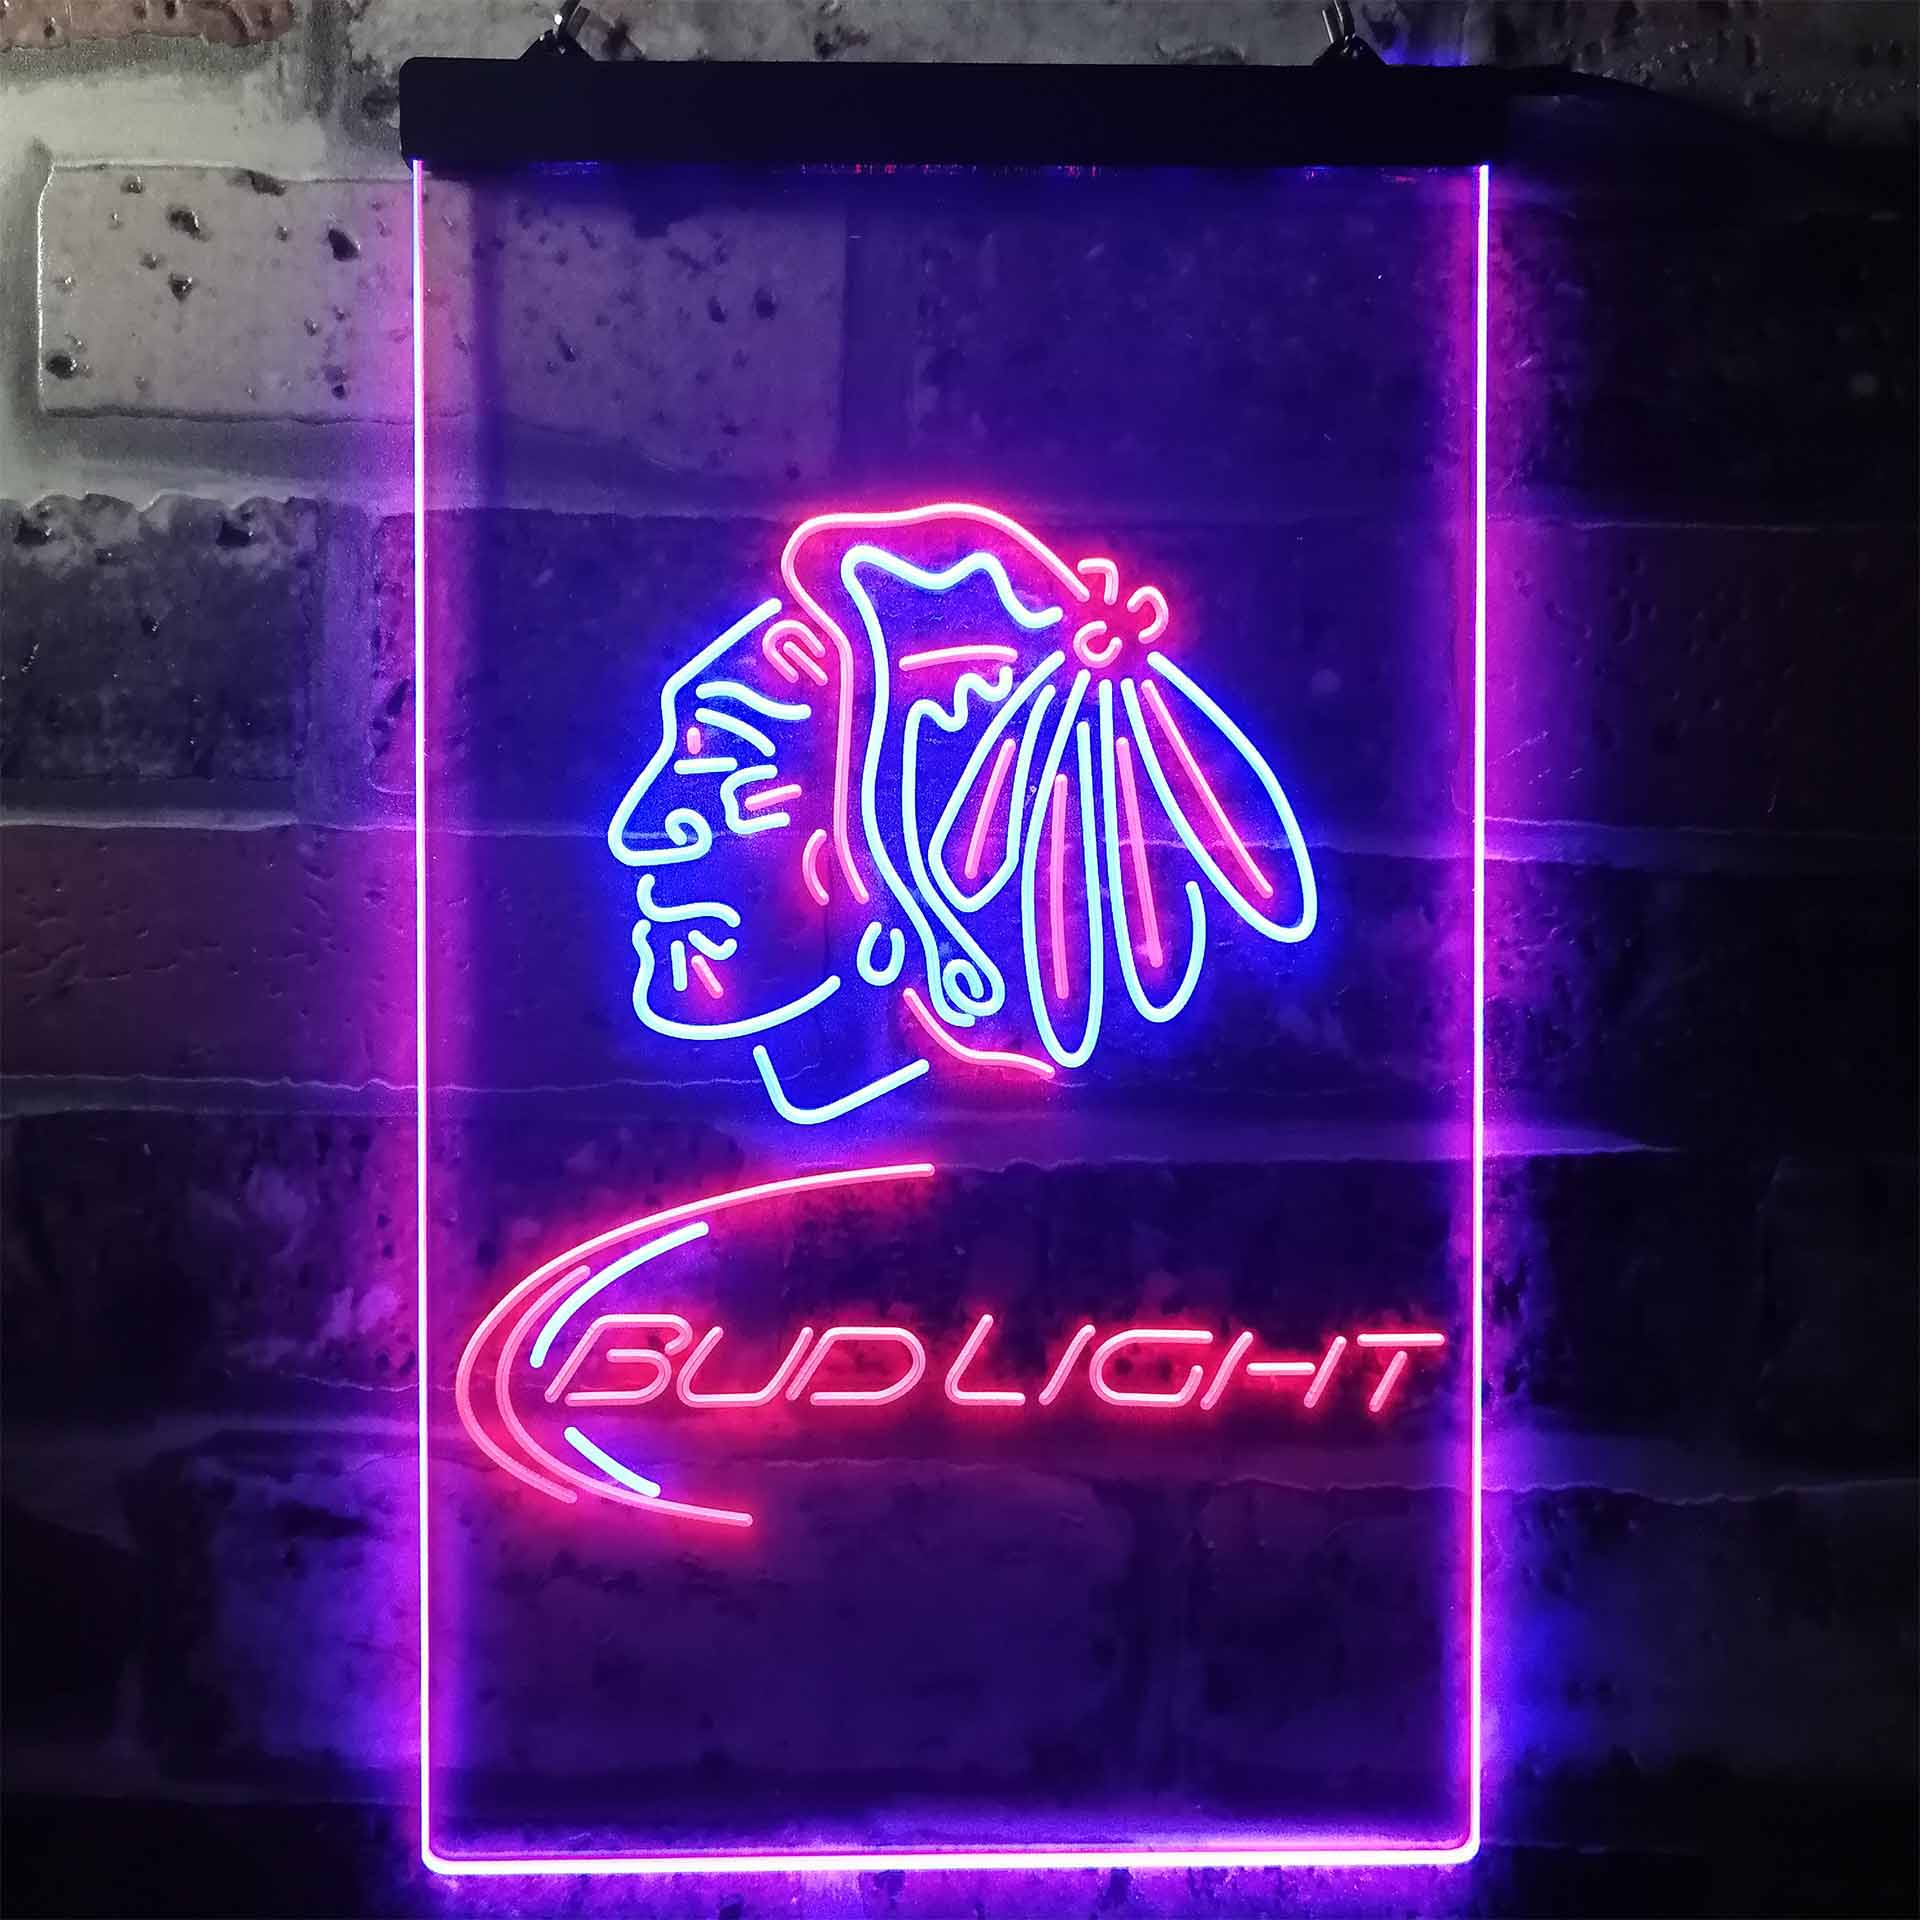 Chicago Blackhawks Bud Light Neon-Like LED Sign